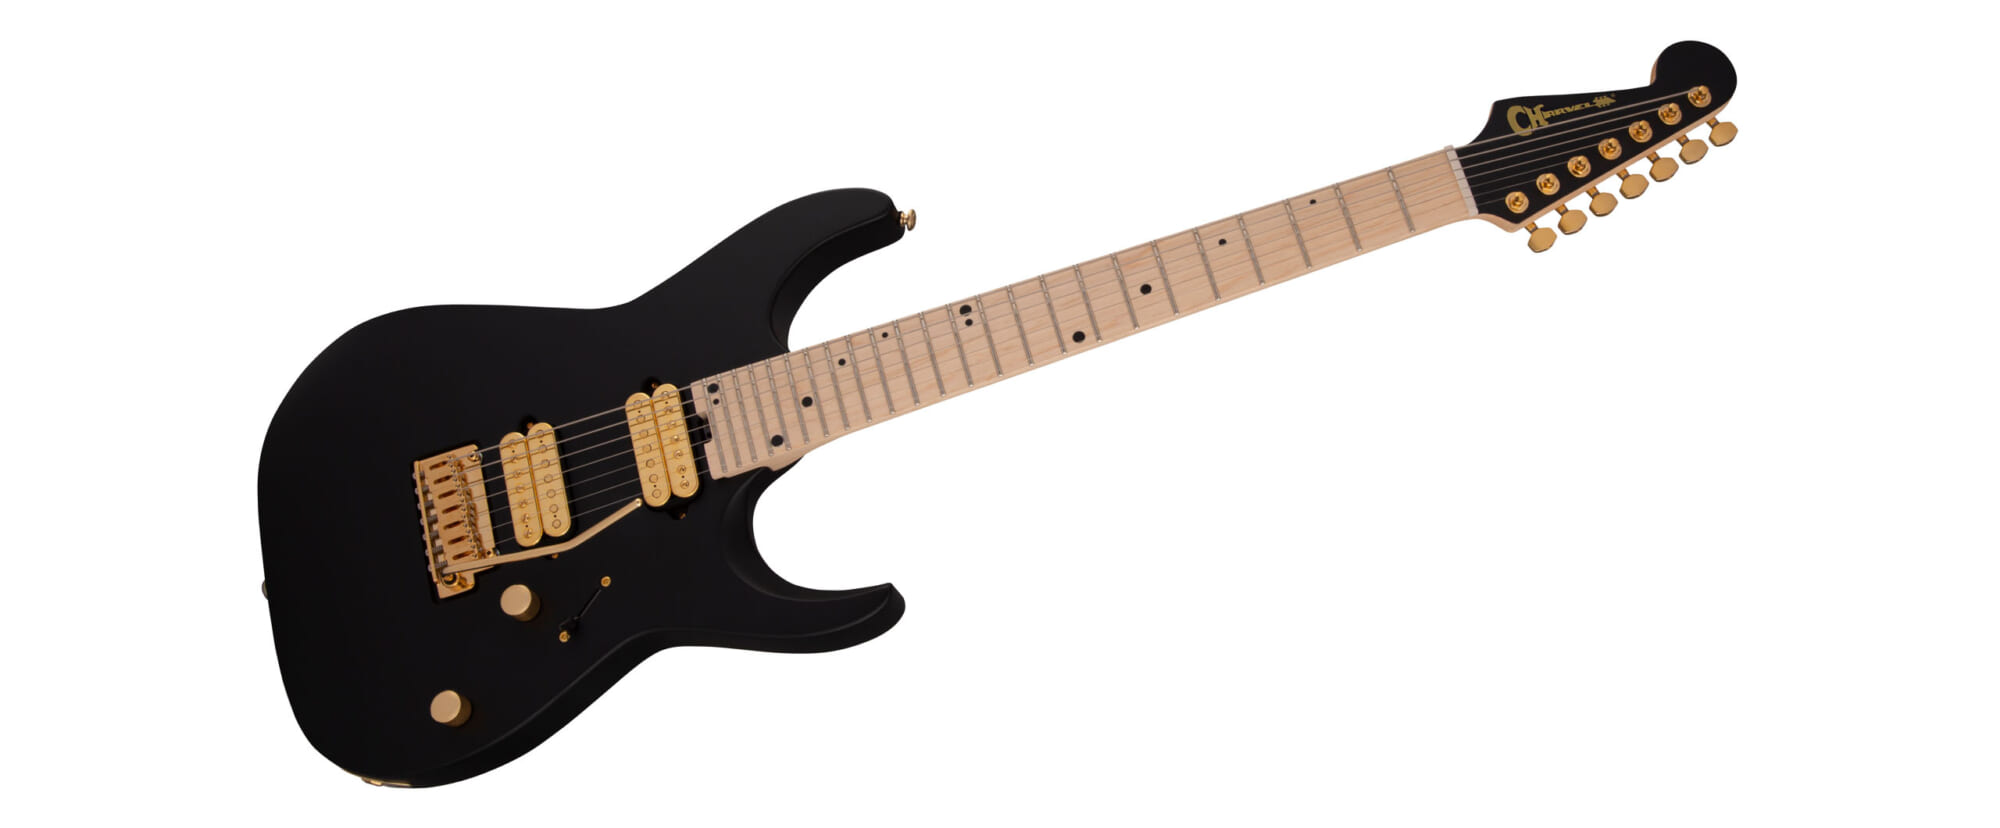 エンジェル・ヴィヴァルディのシグネチャー・ギター新モデルの色はサテン・ブラック